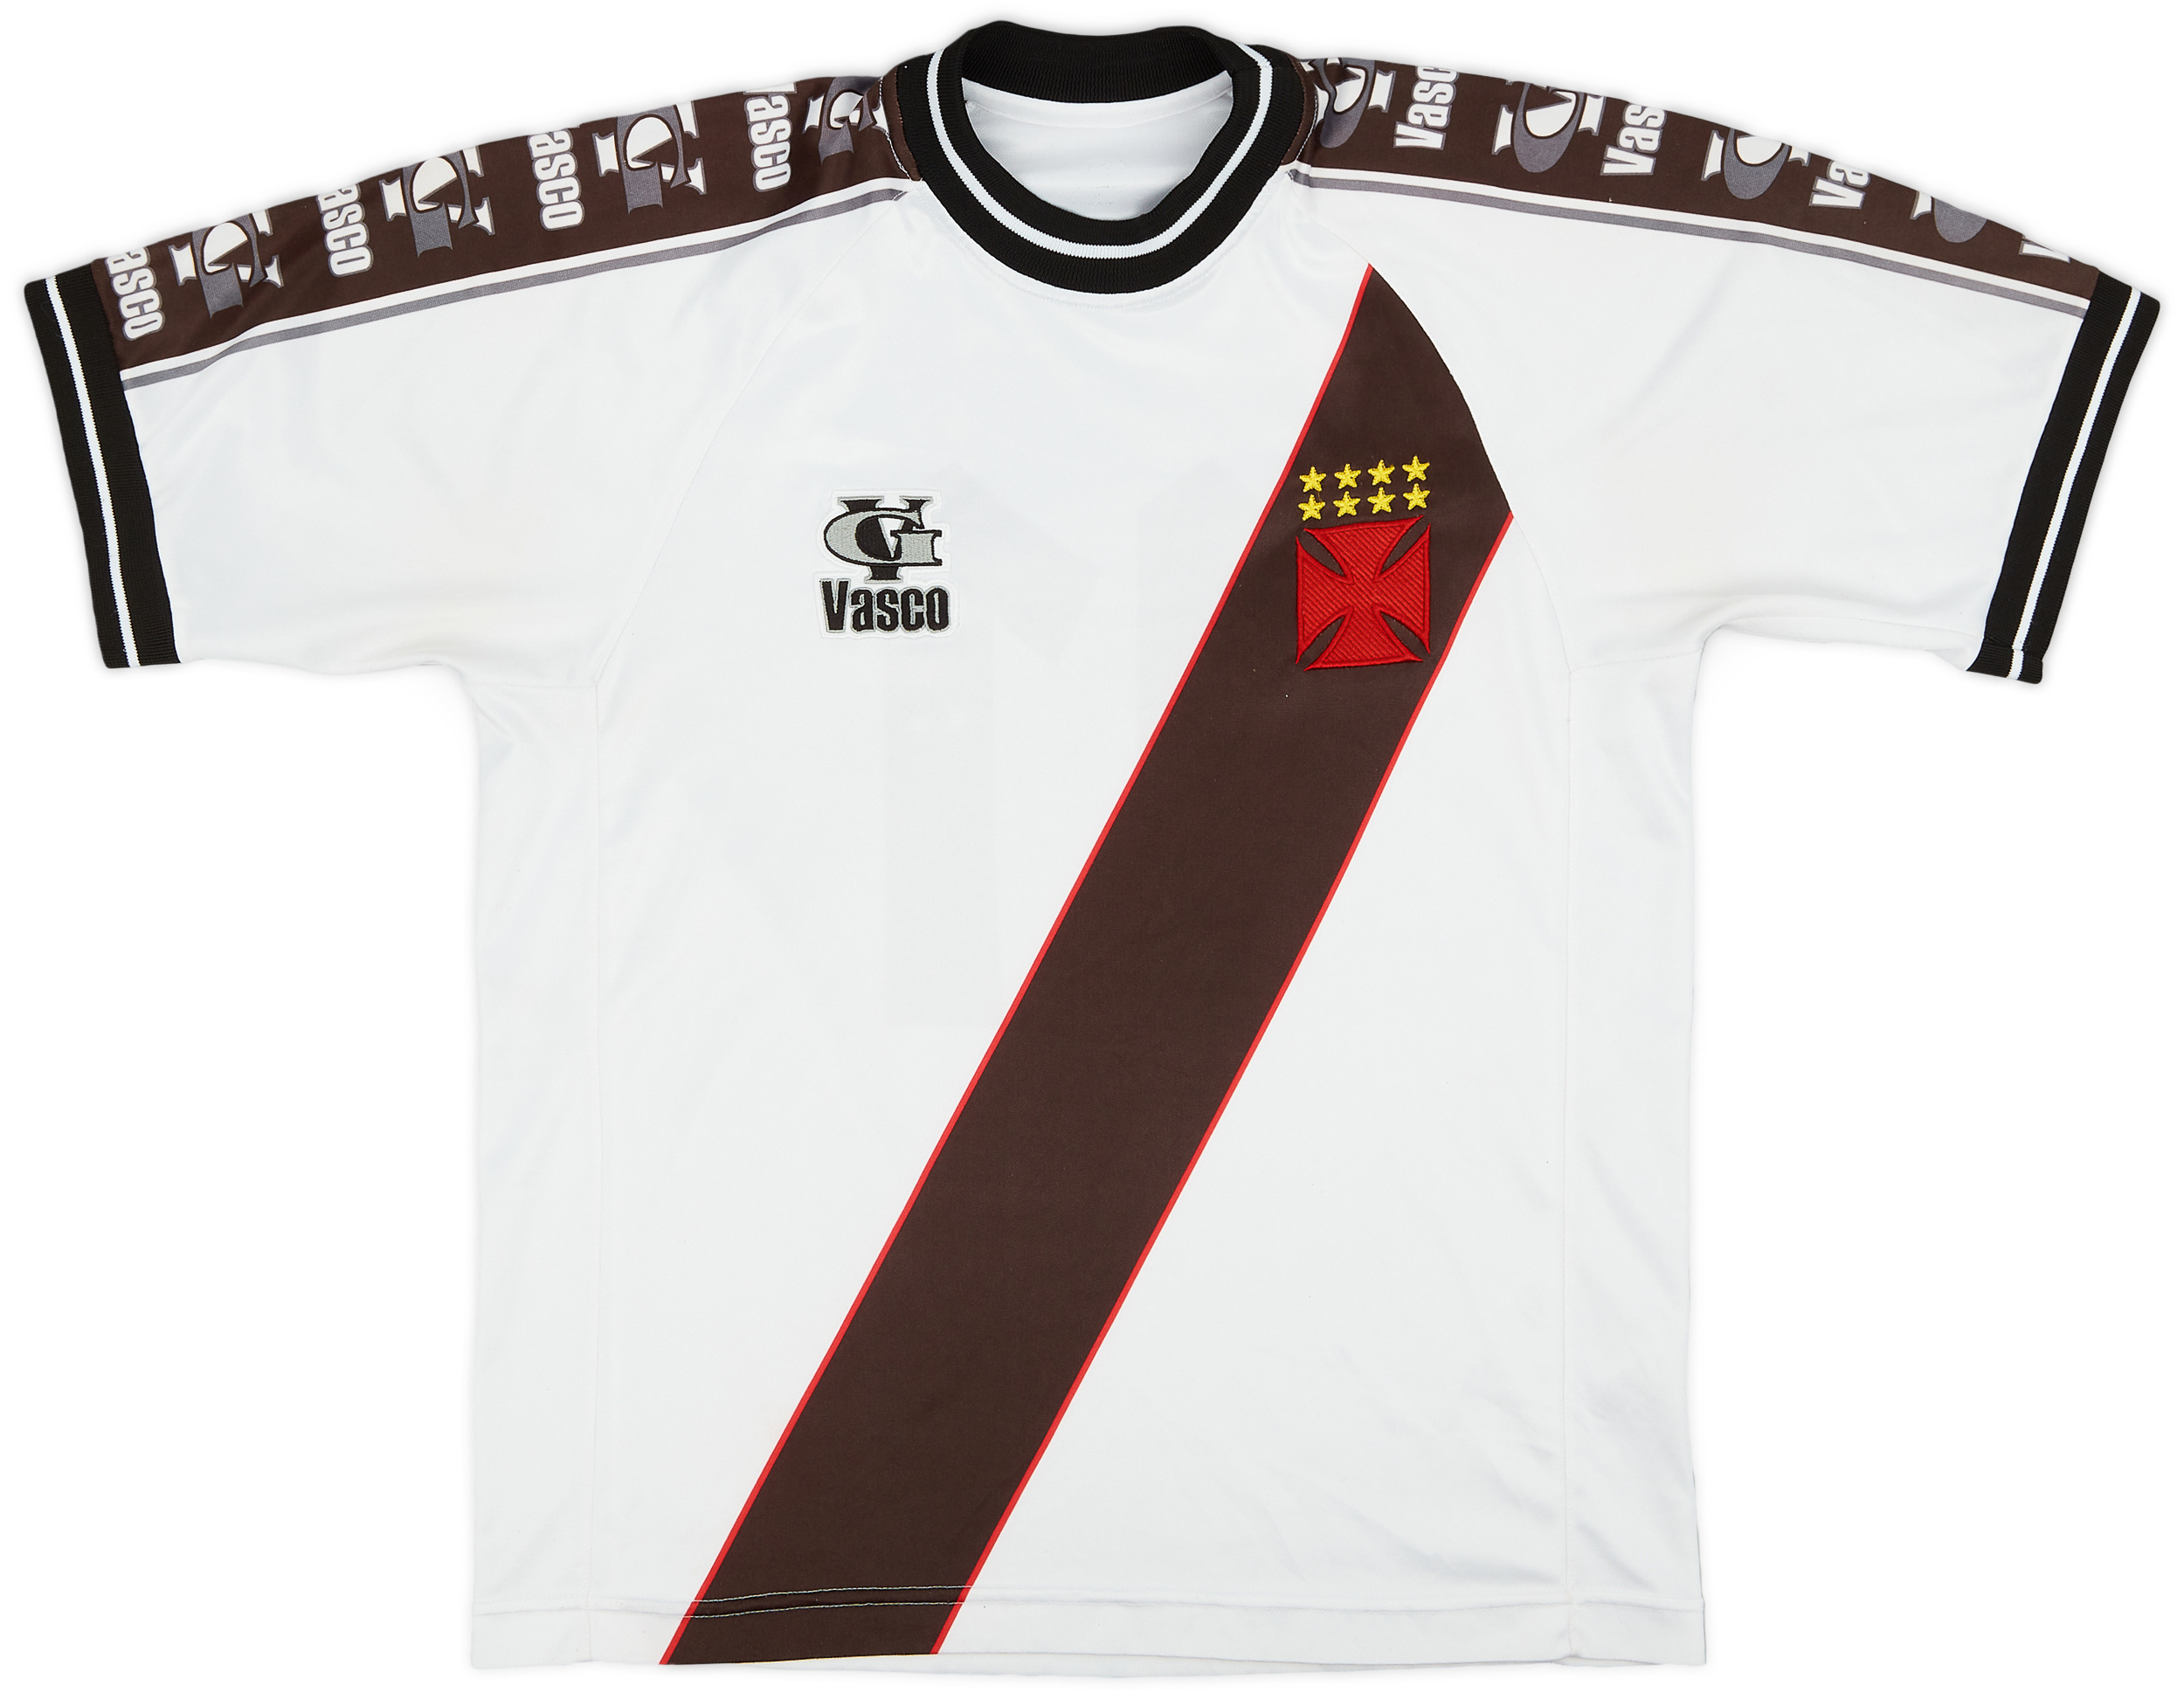 2001-02 Vasco da Gama Away Shirt #11 (Romário) - 9/10 - ()